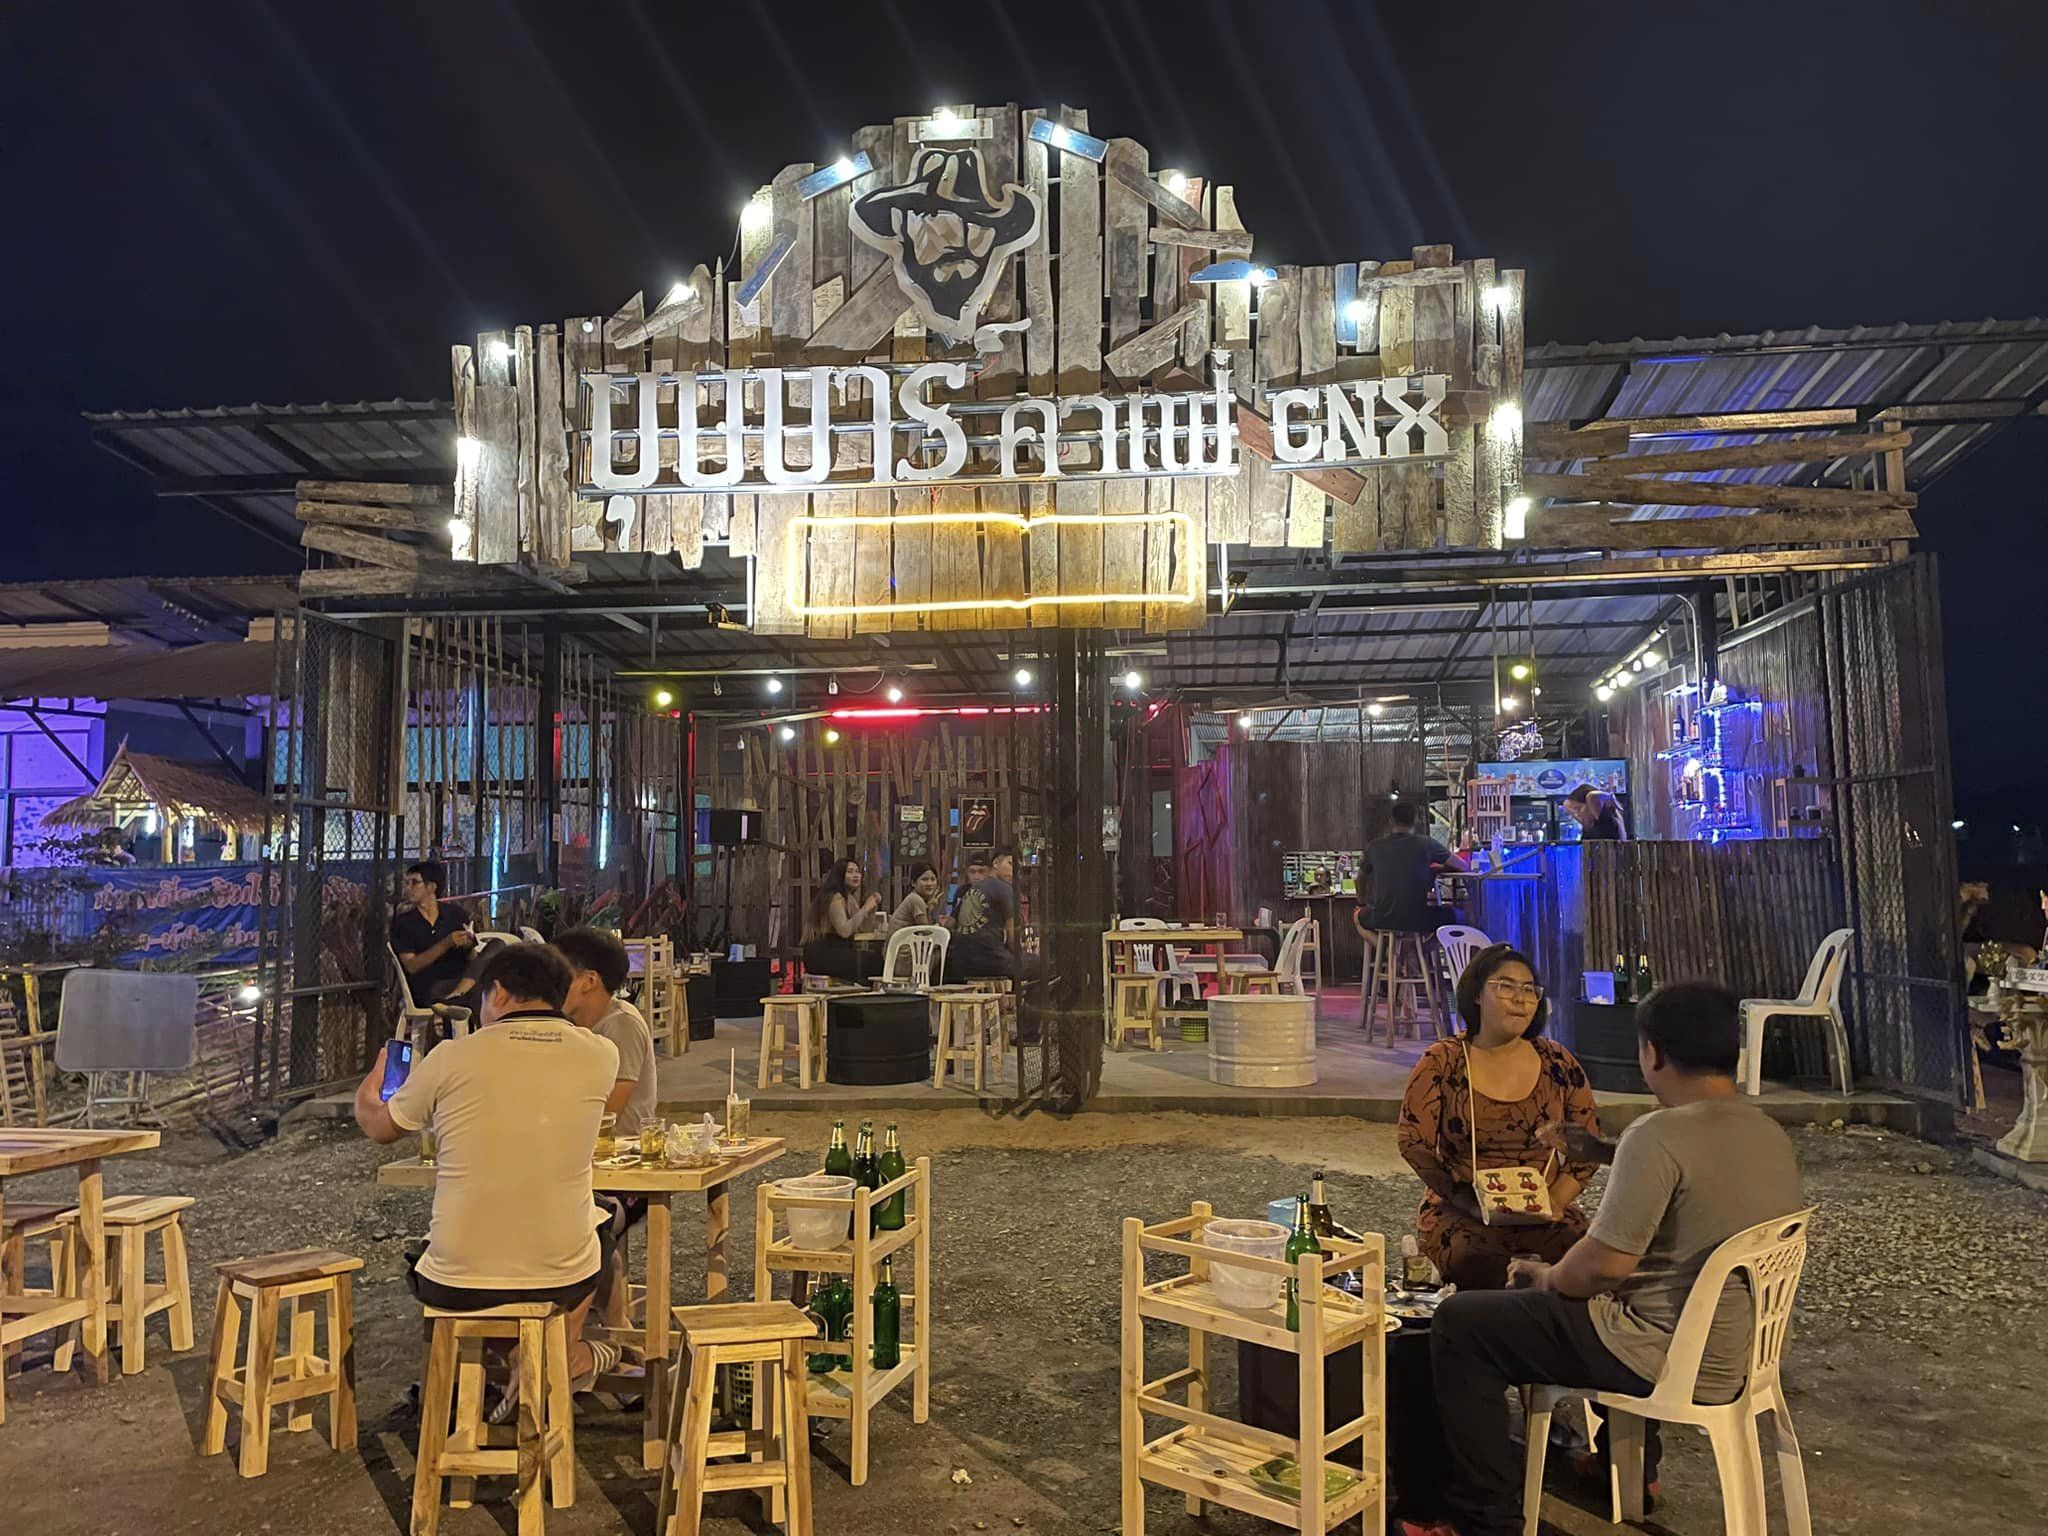 บุษบาร์ คาเฟ่เชียงใหม่ (บุษบาร์ คาเฟ่เชียงใหม่) : เชียงใหม่ (Chiang Mai)